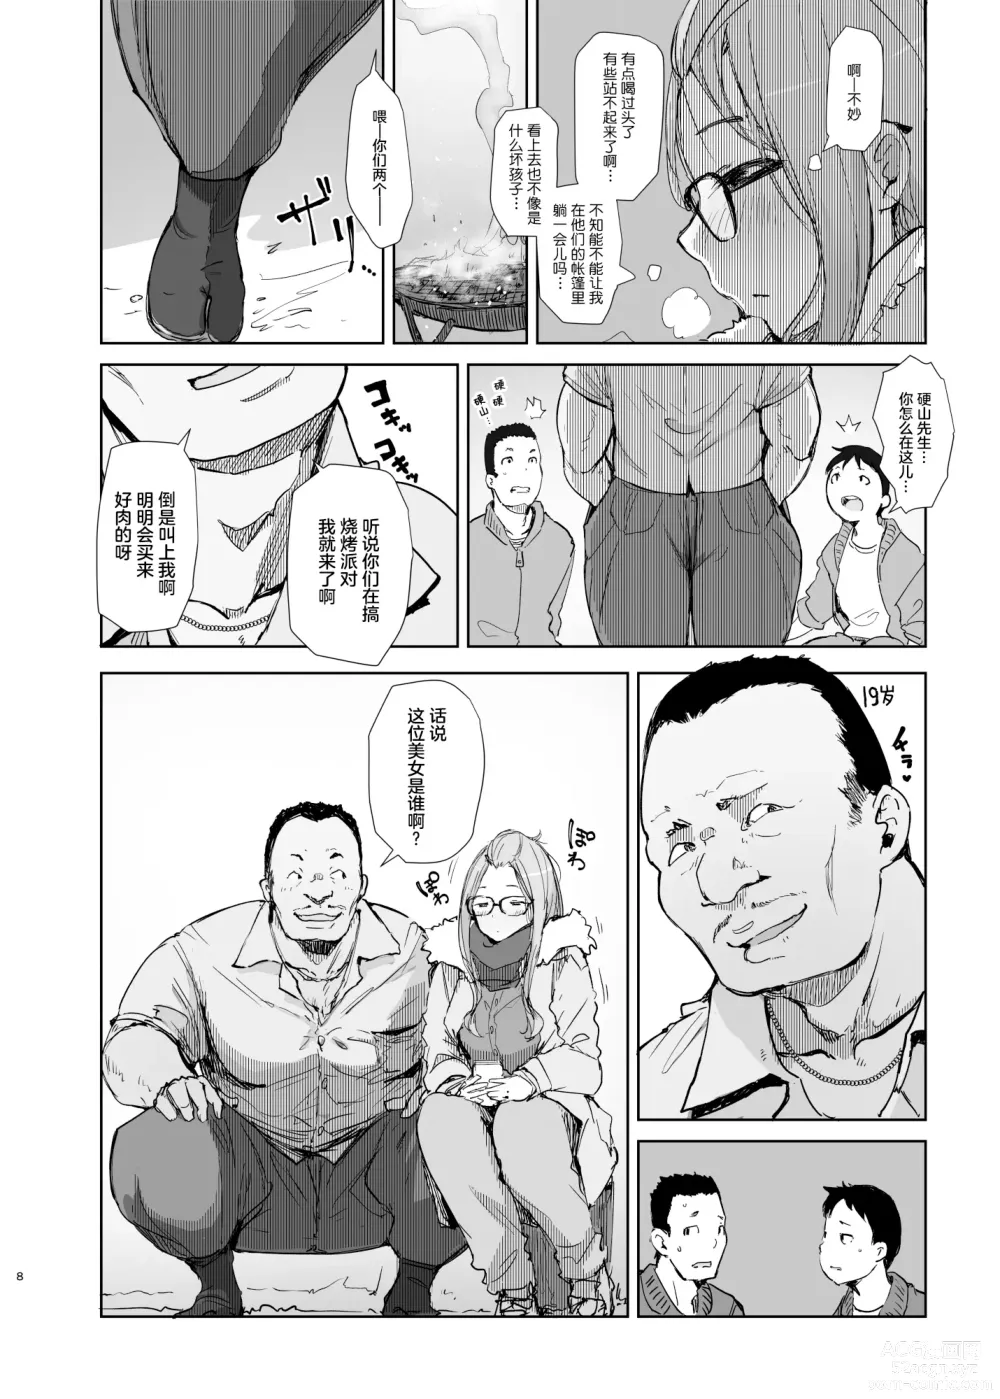 Page 7 of doujinshi Sakura Camp